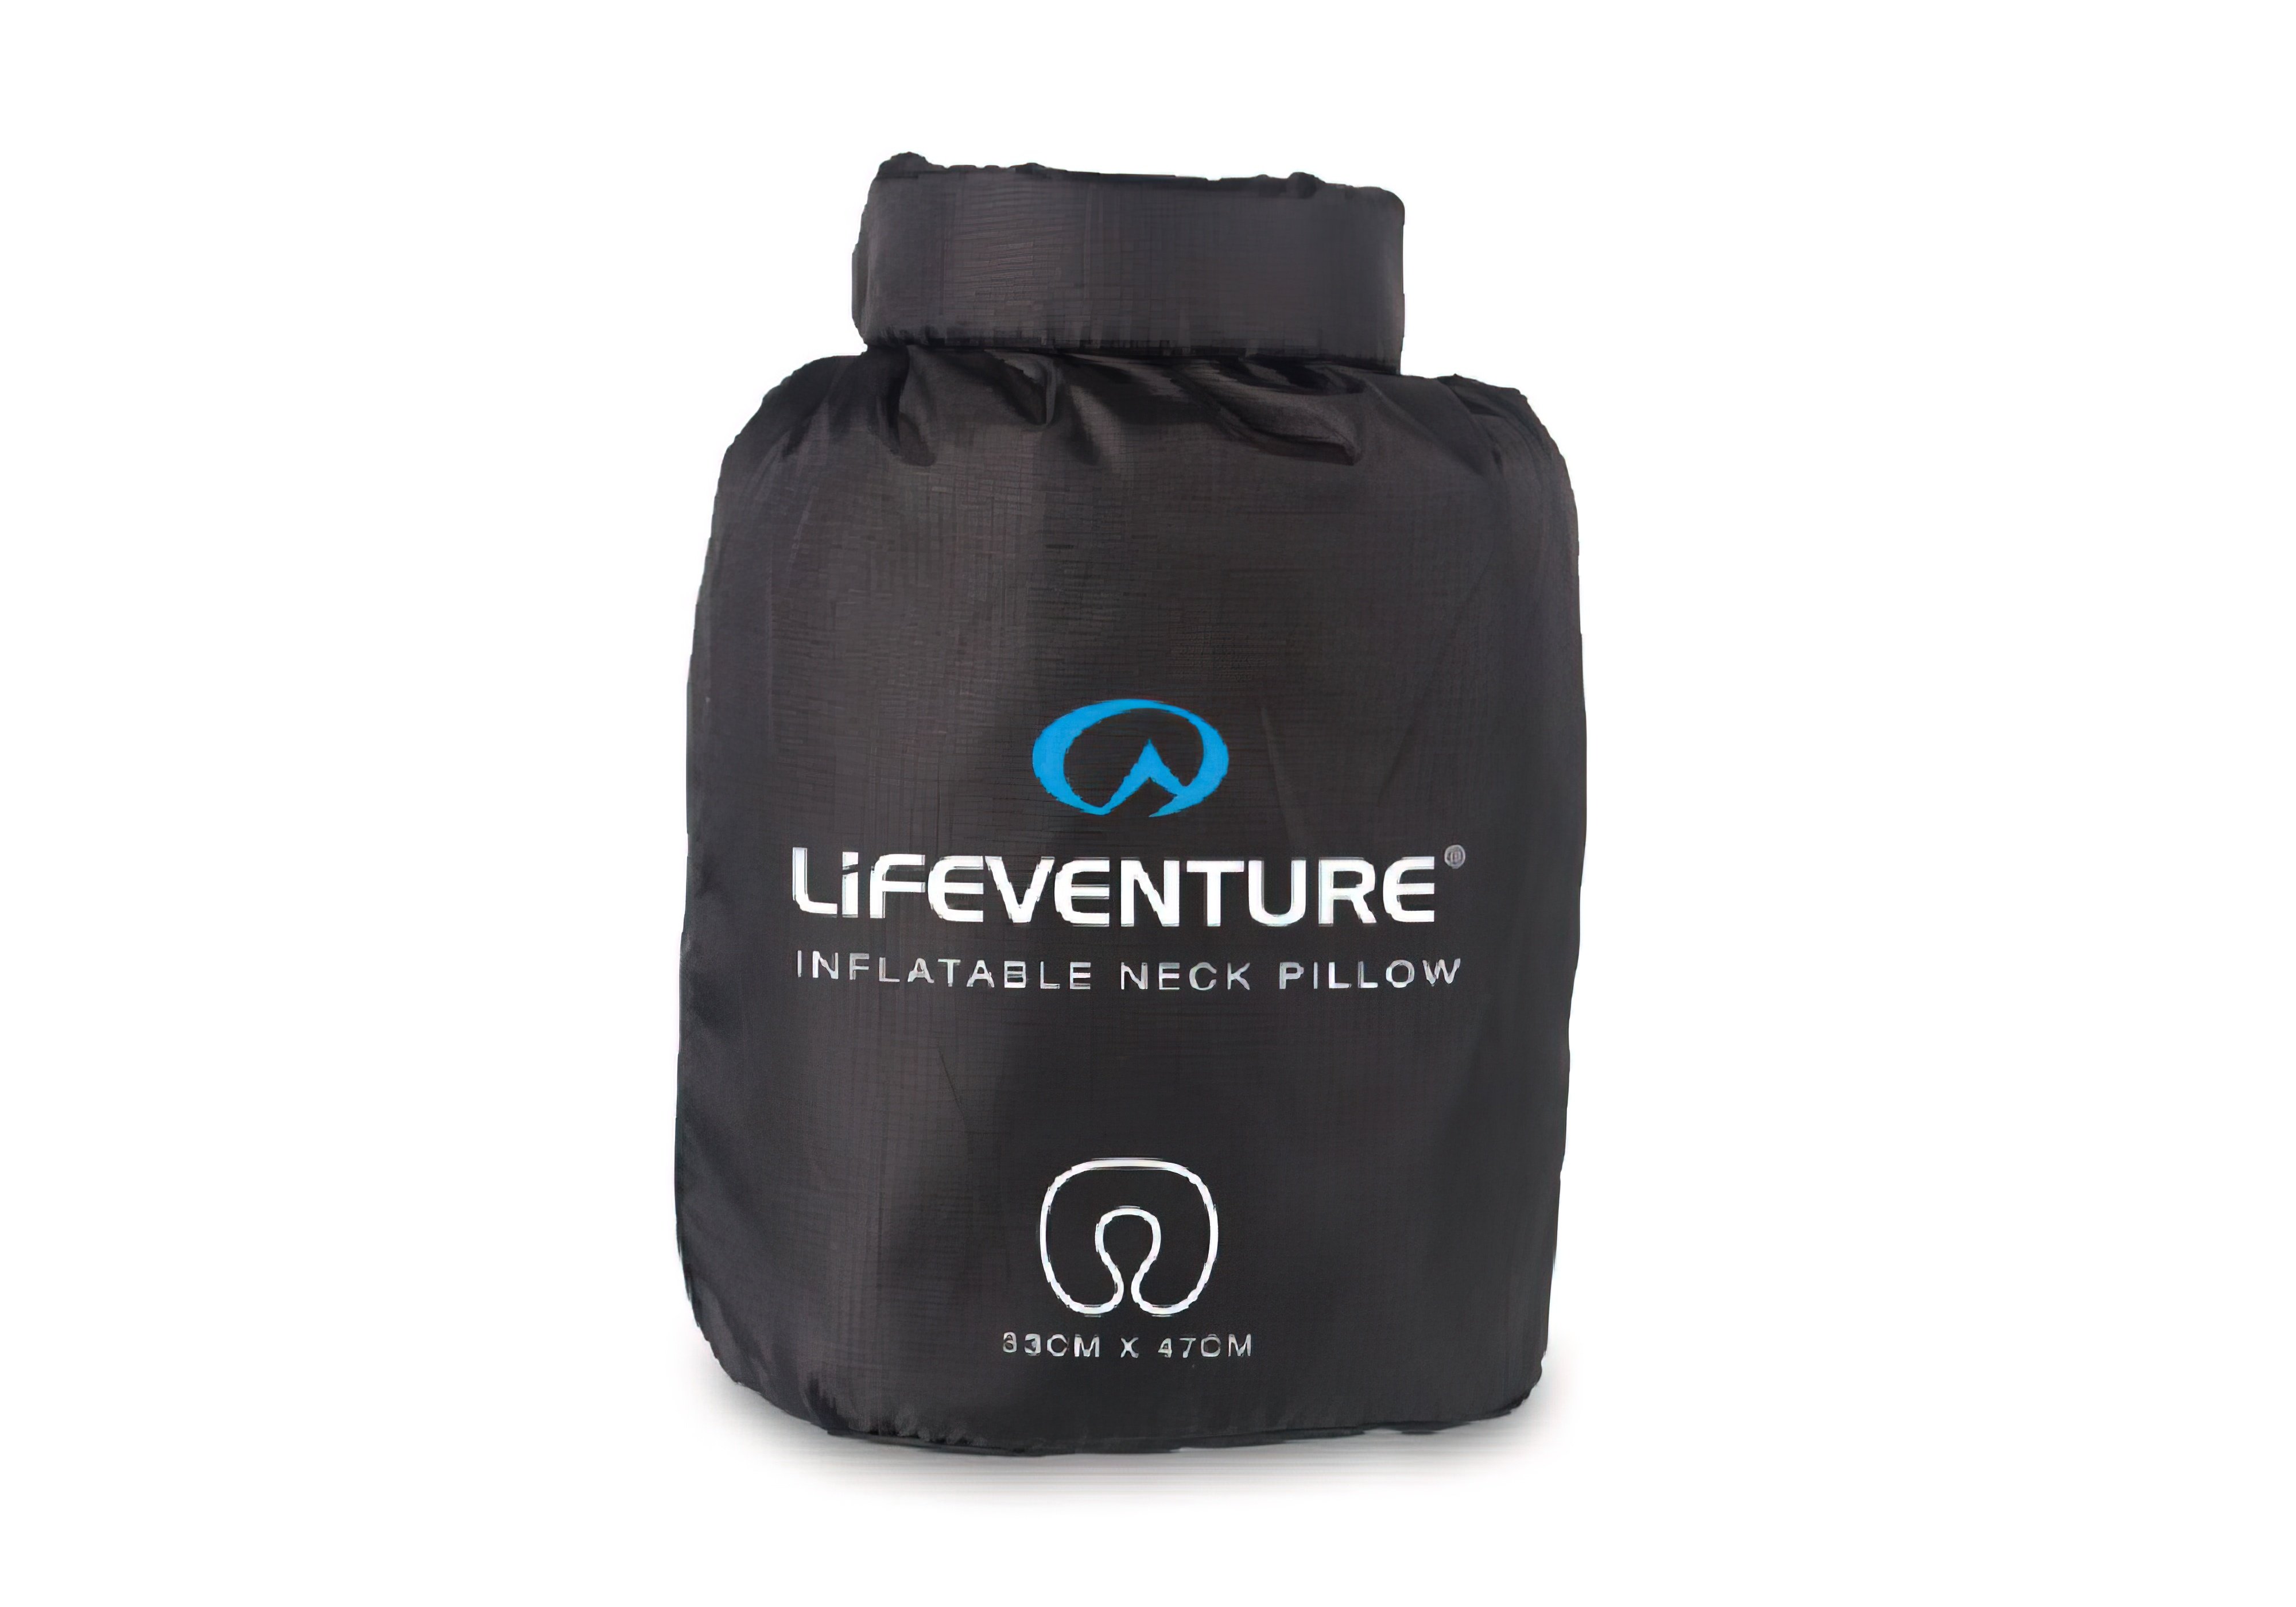  Купить Подушки Подушка "Inflatable Neck Pillow" Lifeventure